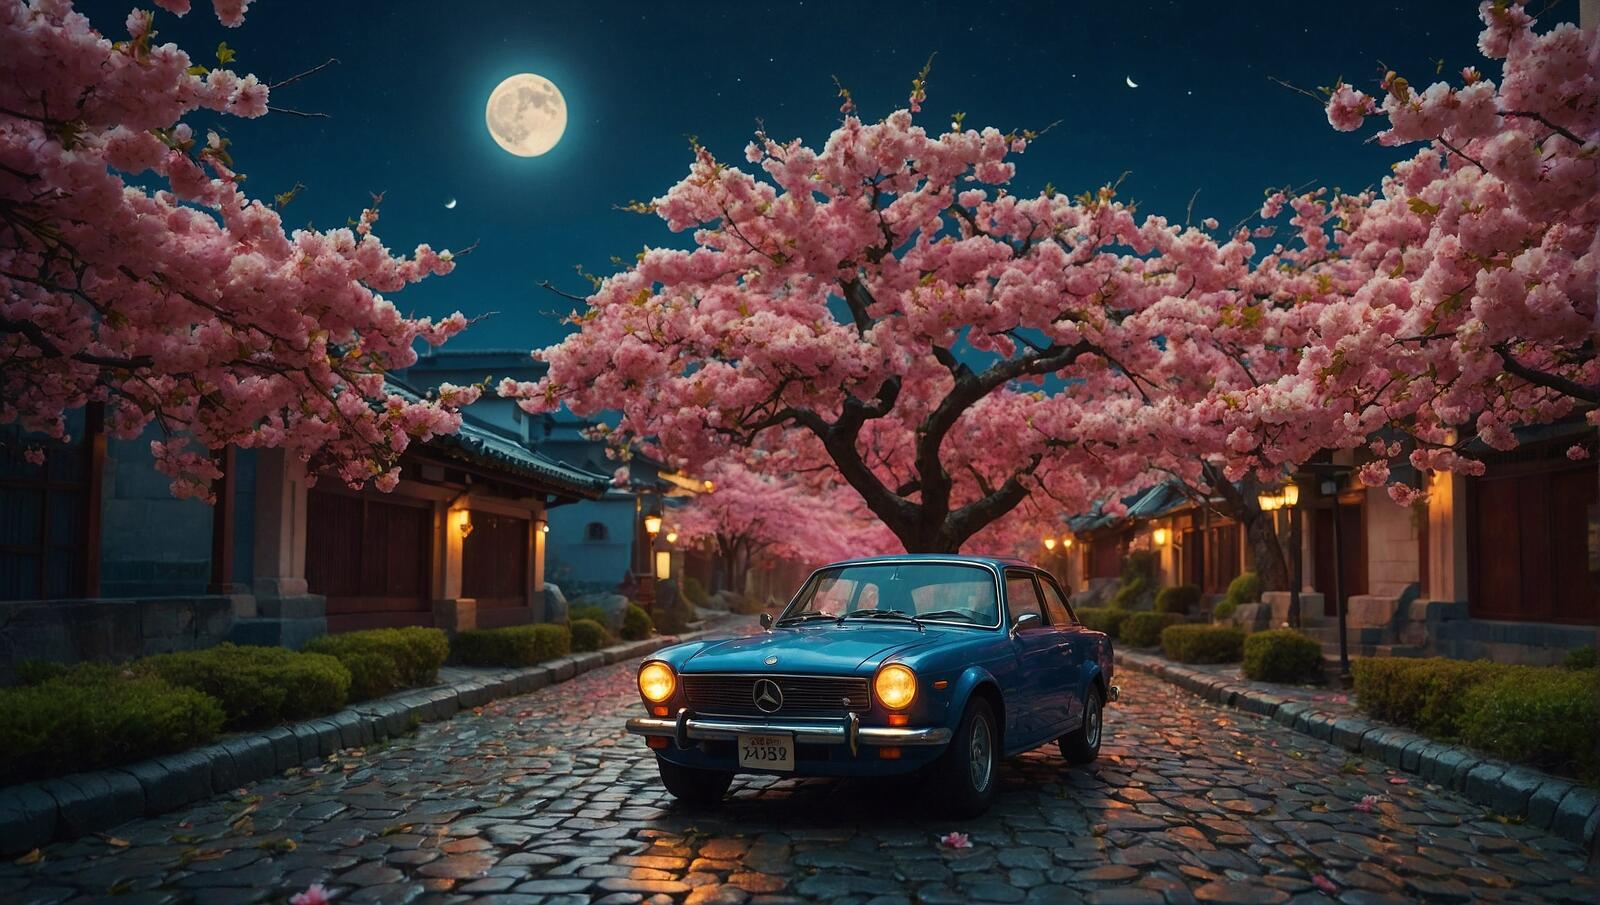 Бесплатное фото Автомобиль, припаркованный на булыжниках рядом с цветущими вишневыми деревьями.